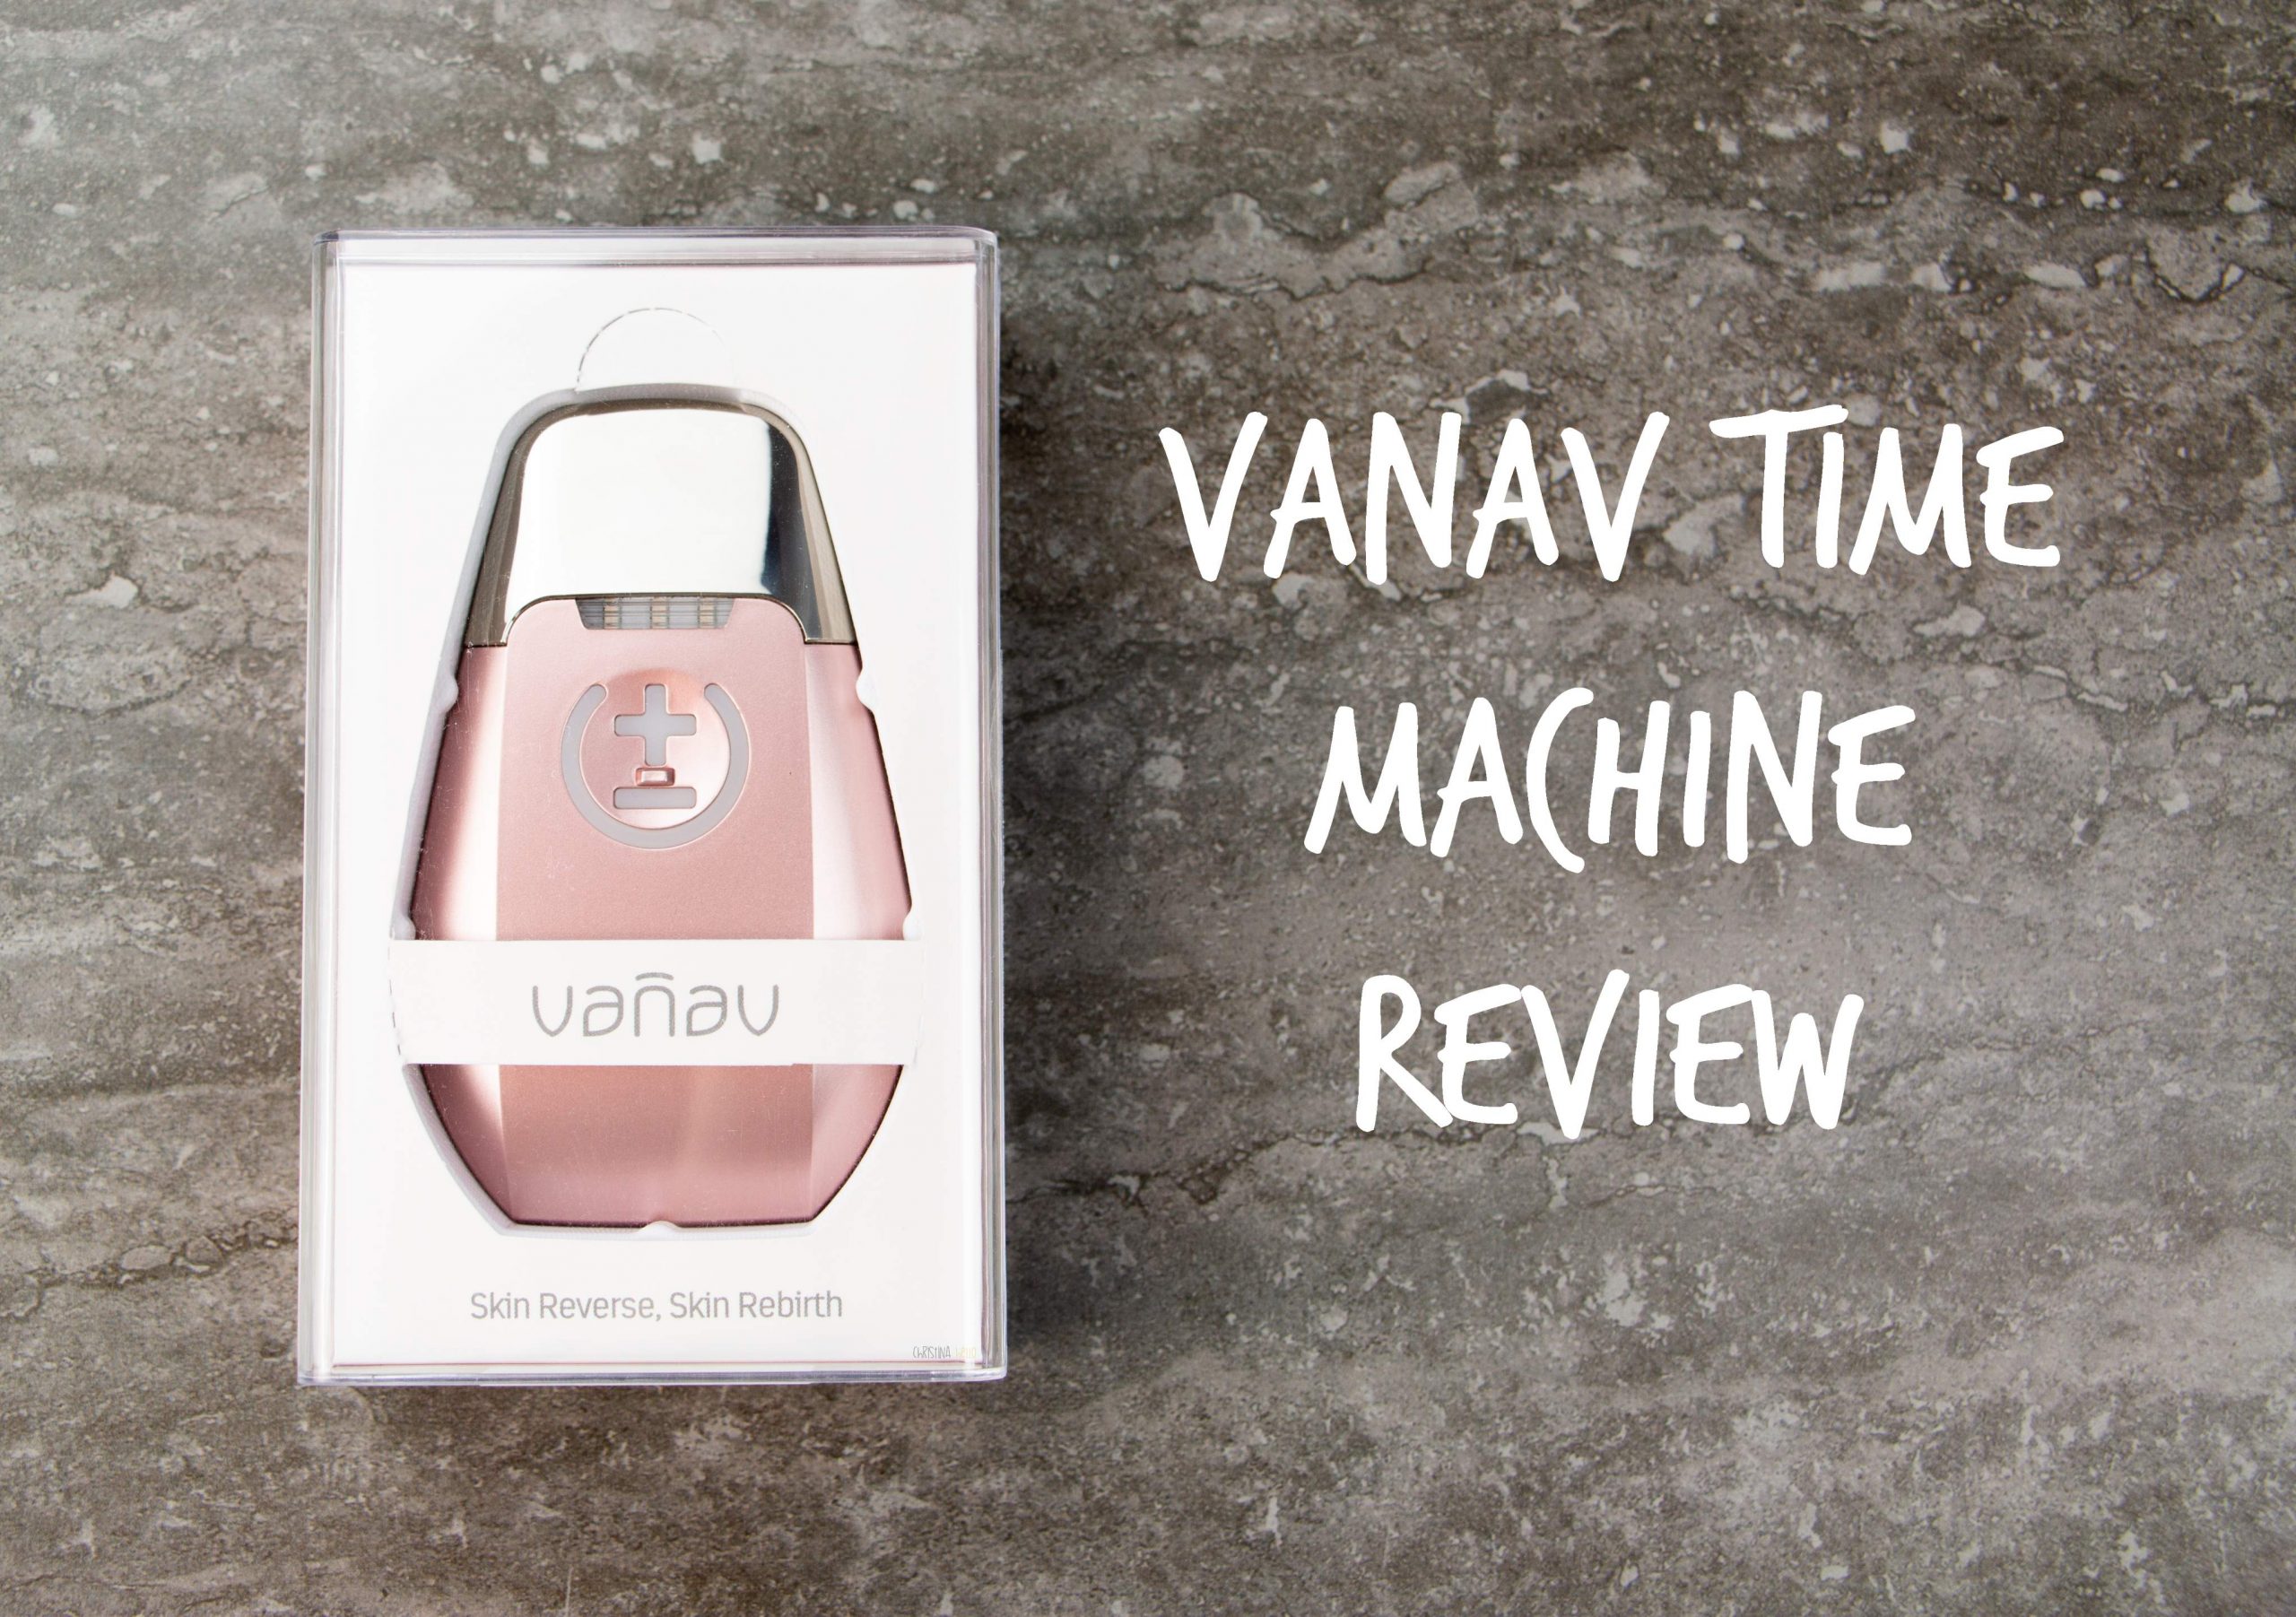 Vanav time machine review